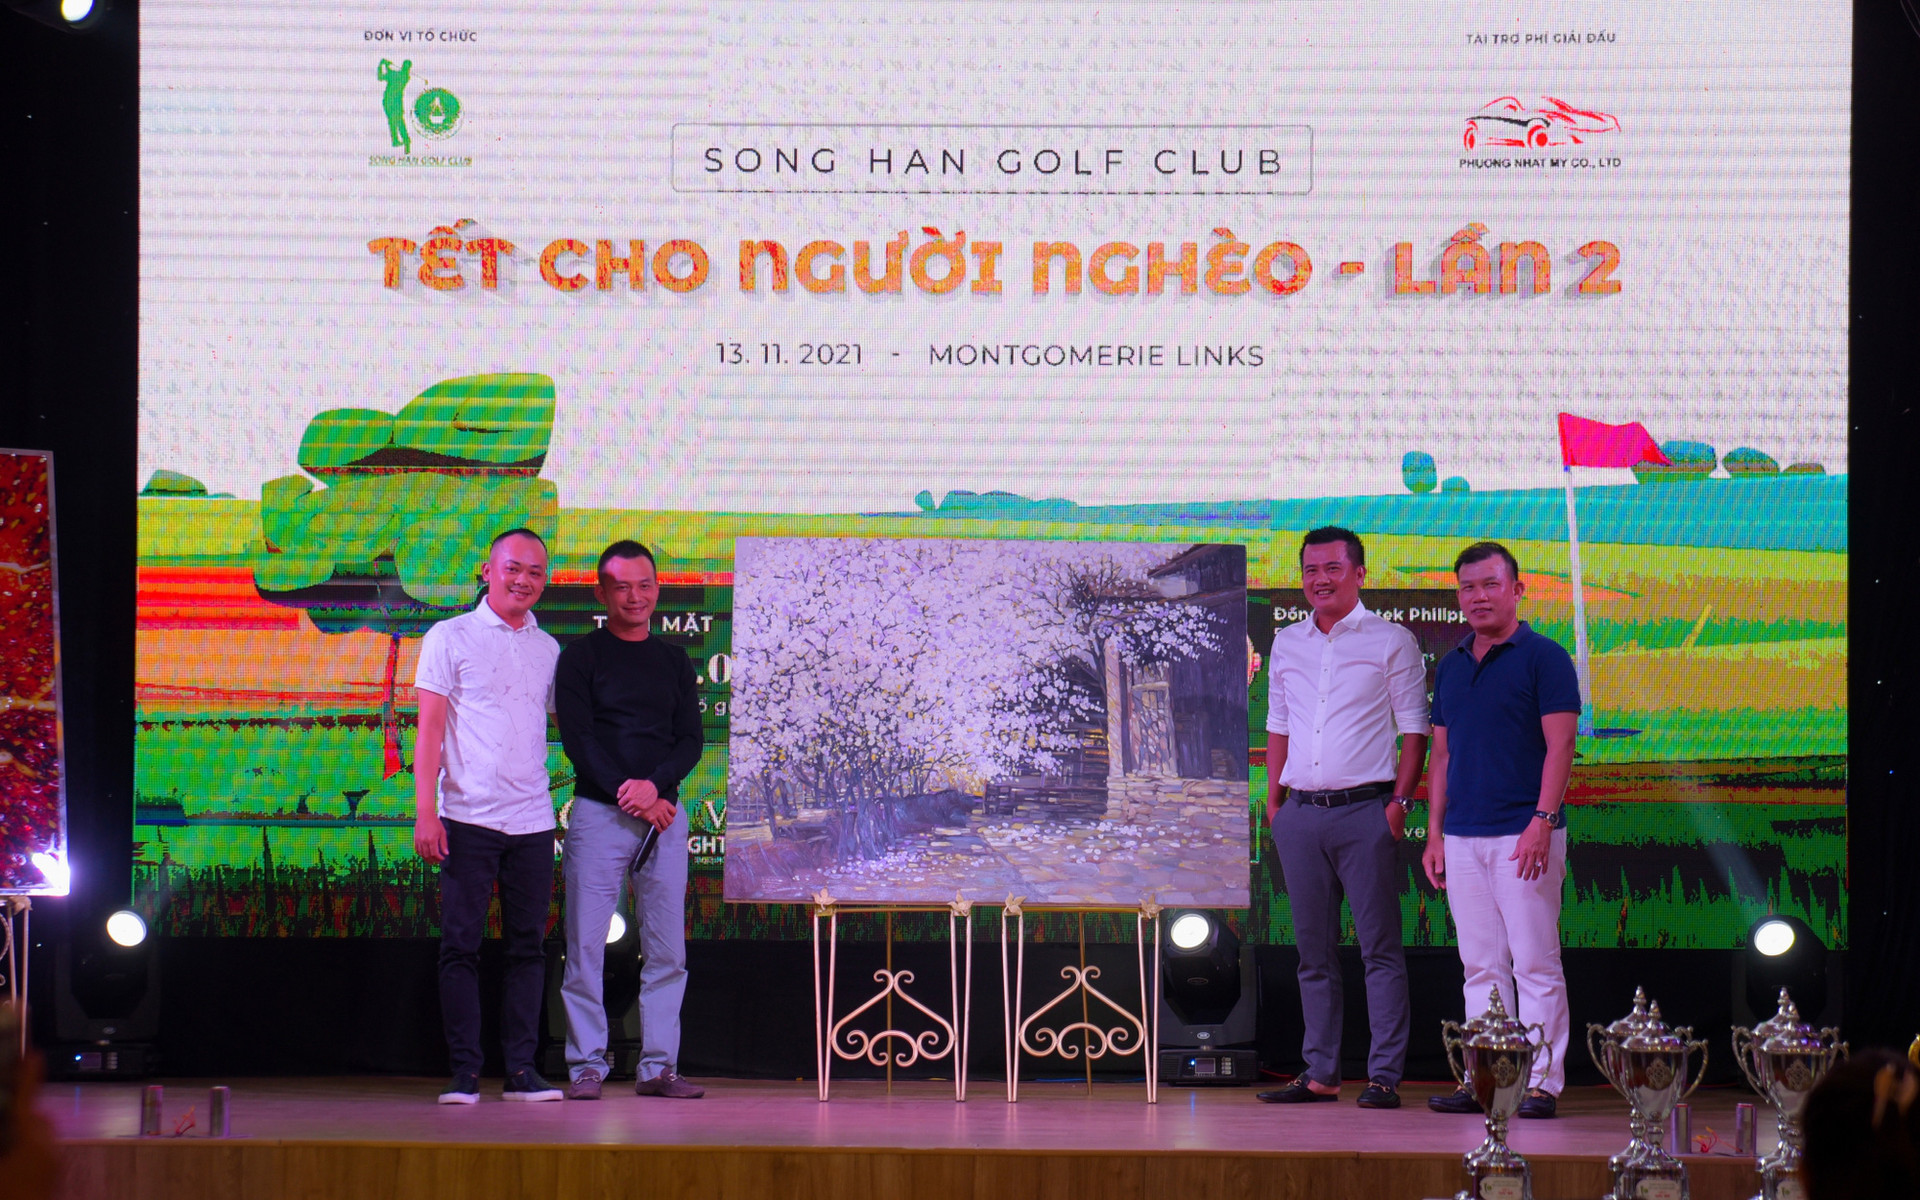 Hơn 1 tỷ đồng tiền từ thiện từ giải Sông Hàn Golf Club – Tết cho người nghèo lần 2 - Ảnh 2.